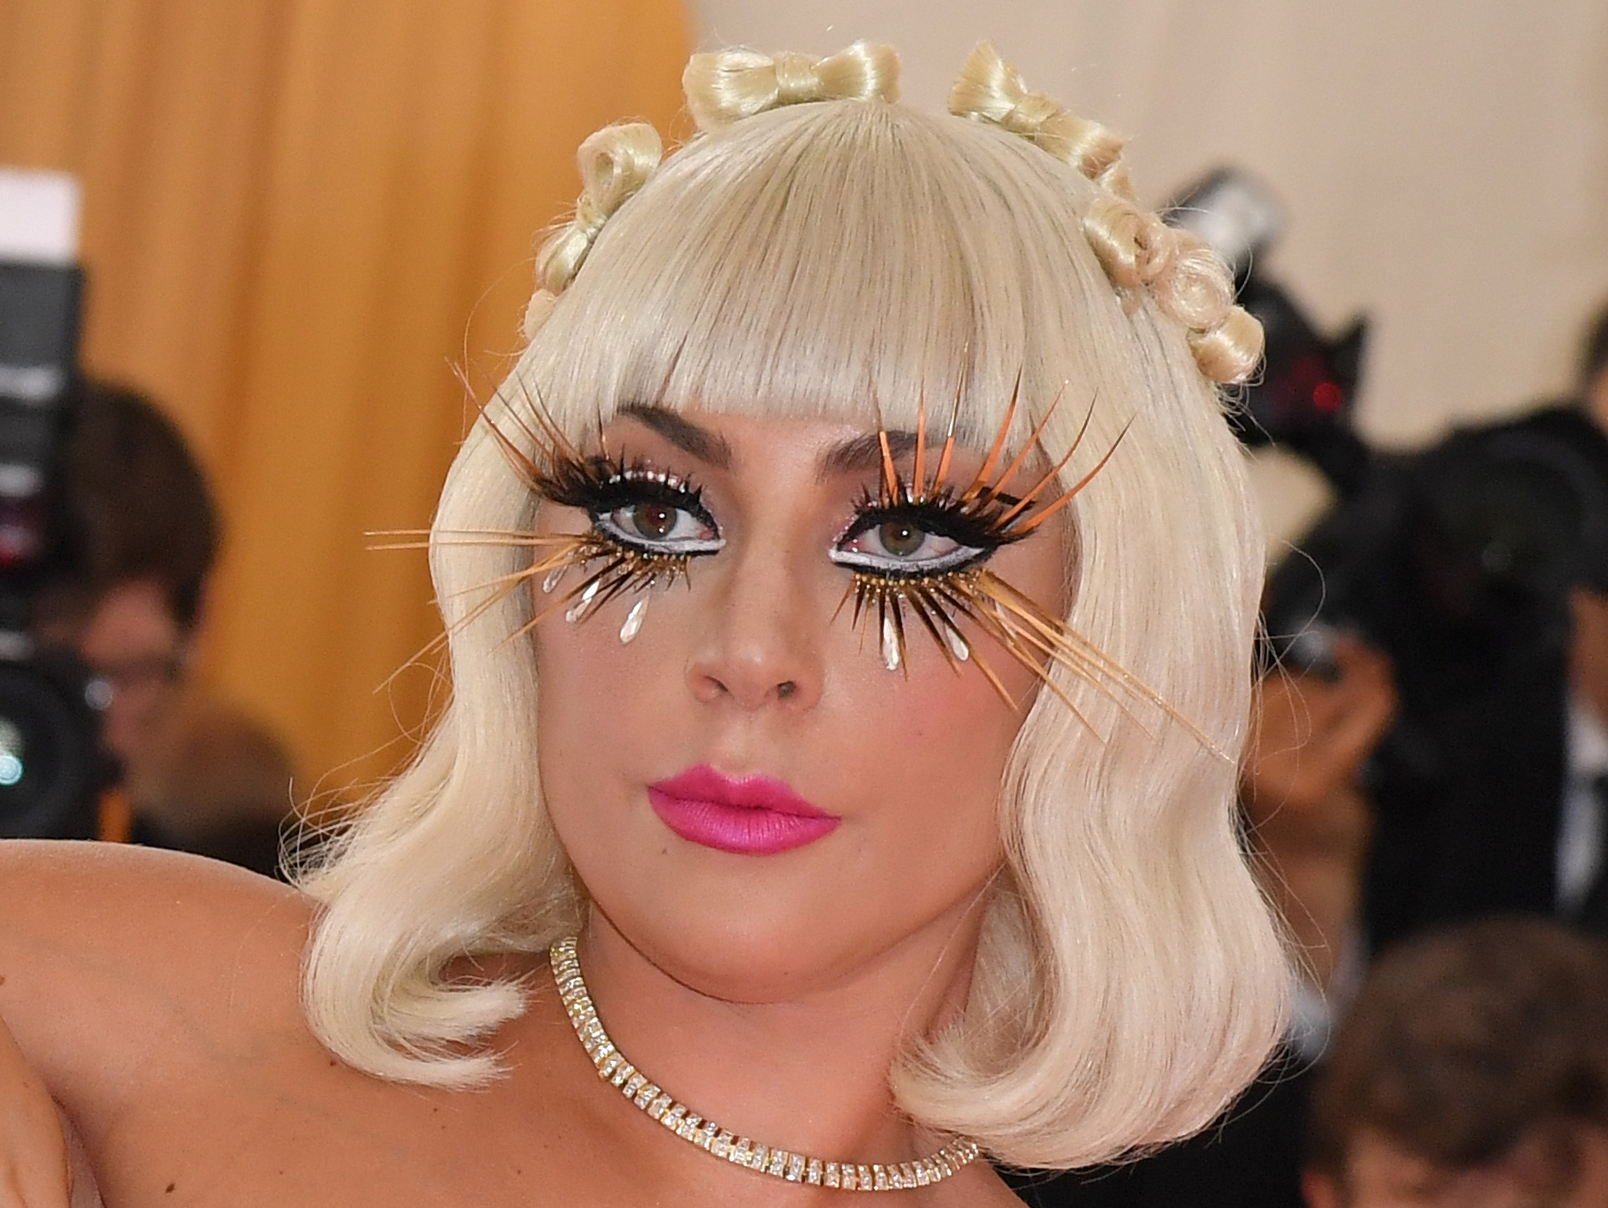 Además de sus extravagantes atuendos, Lady Gaga, también lució unos accesorios impactantes en las pestañas. (Foto Prensa Libre: AFP)